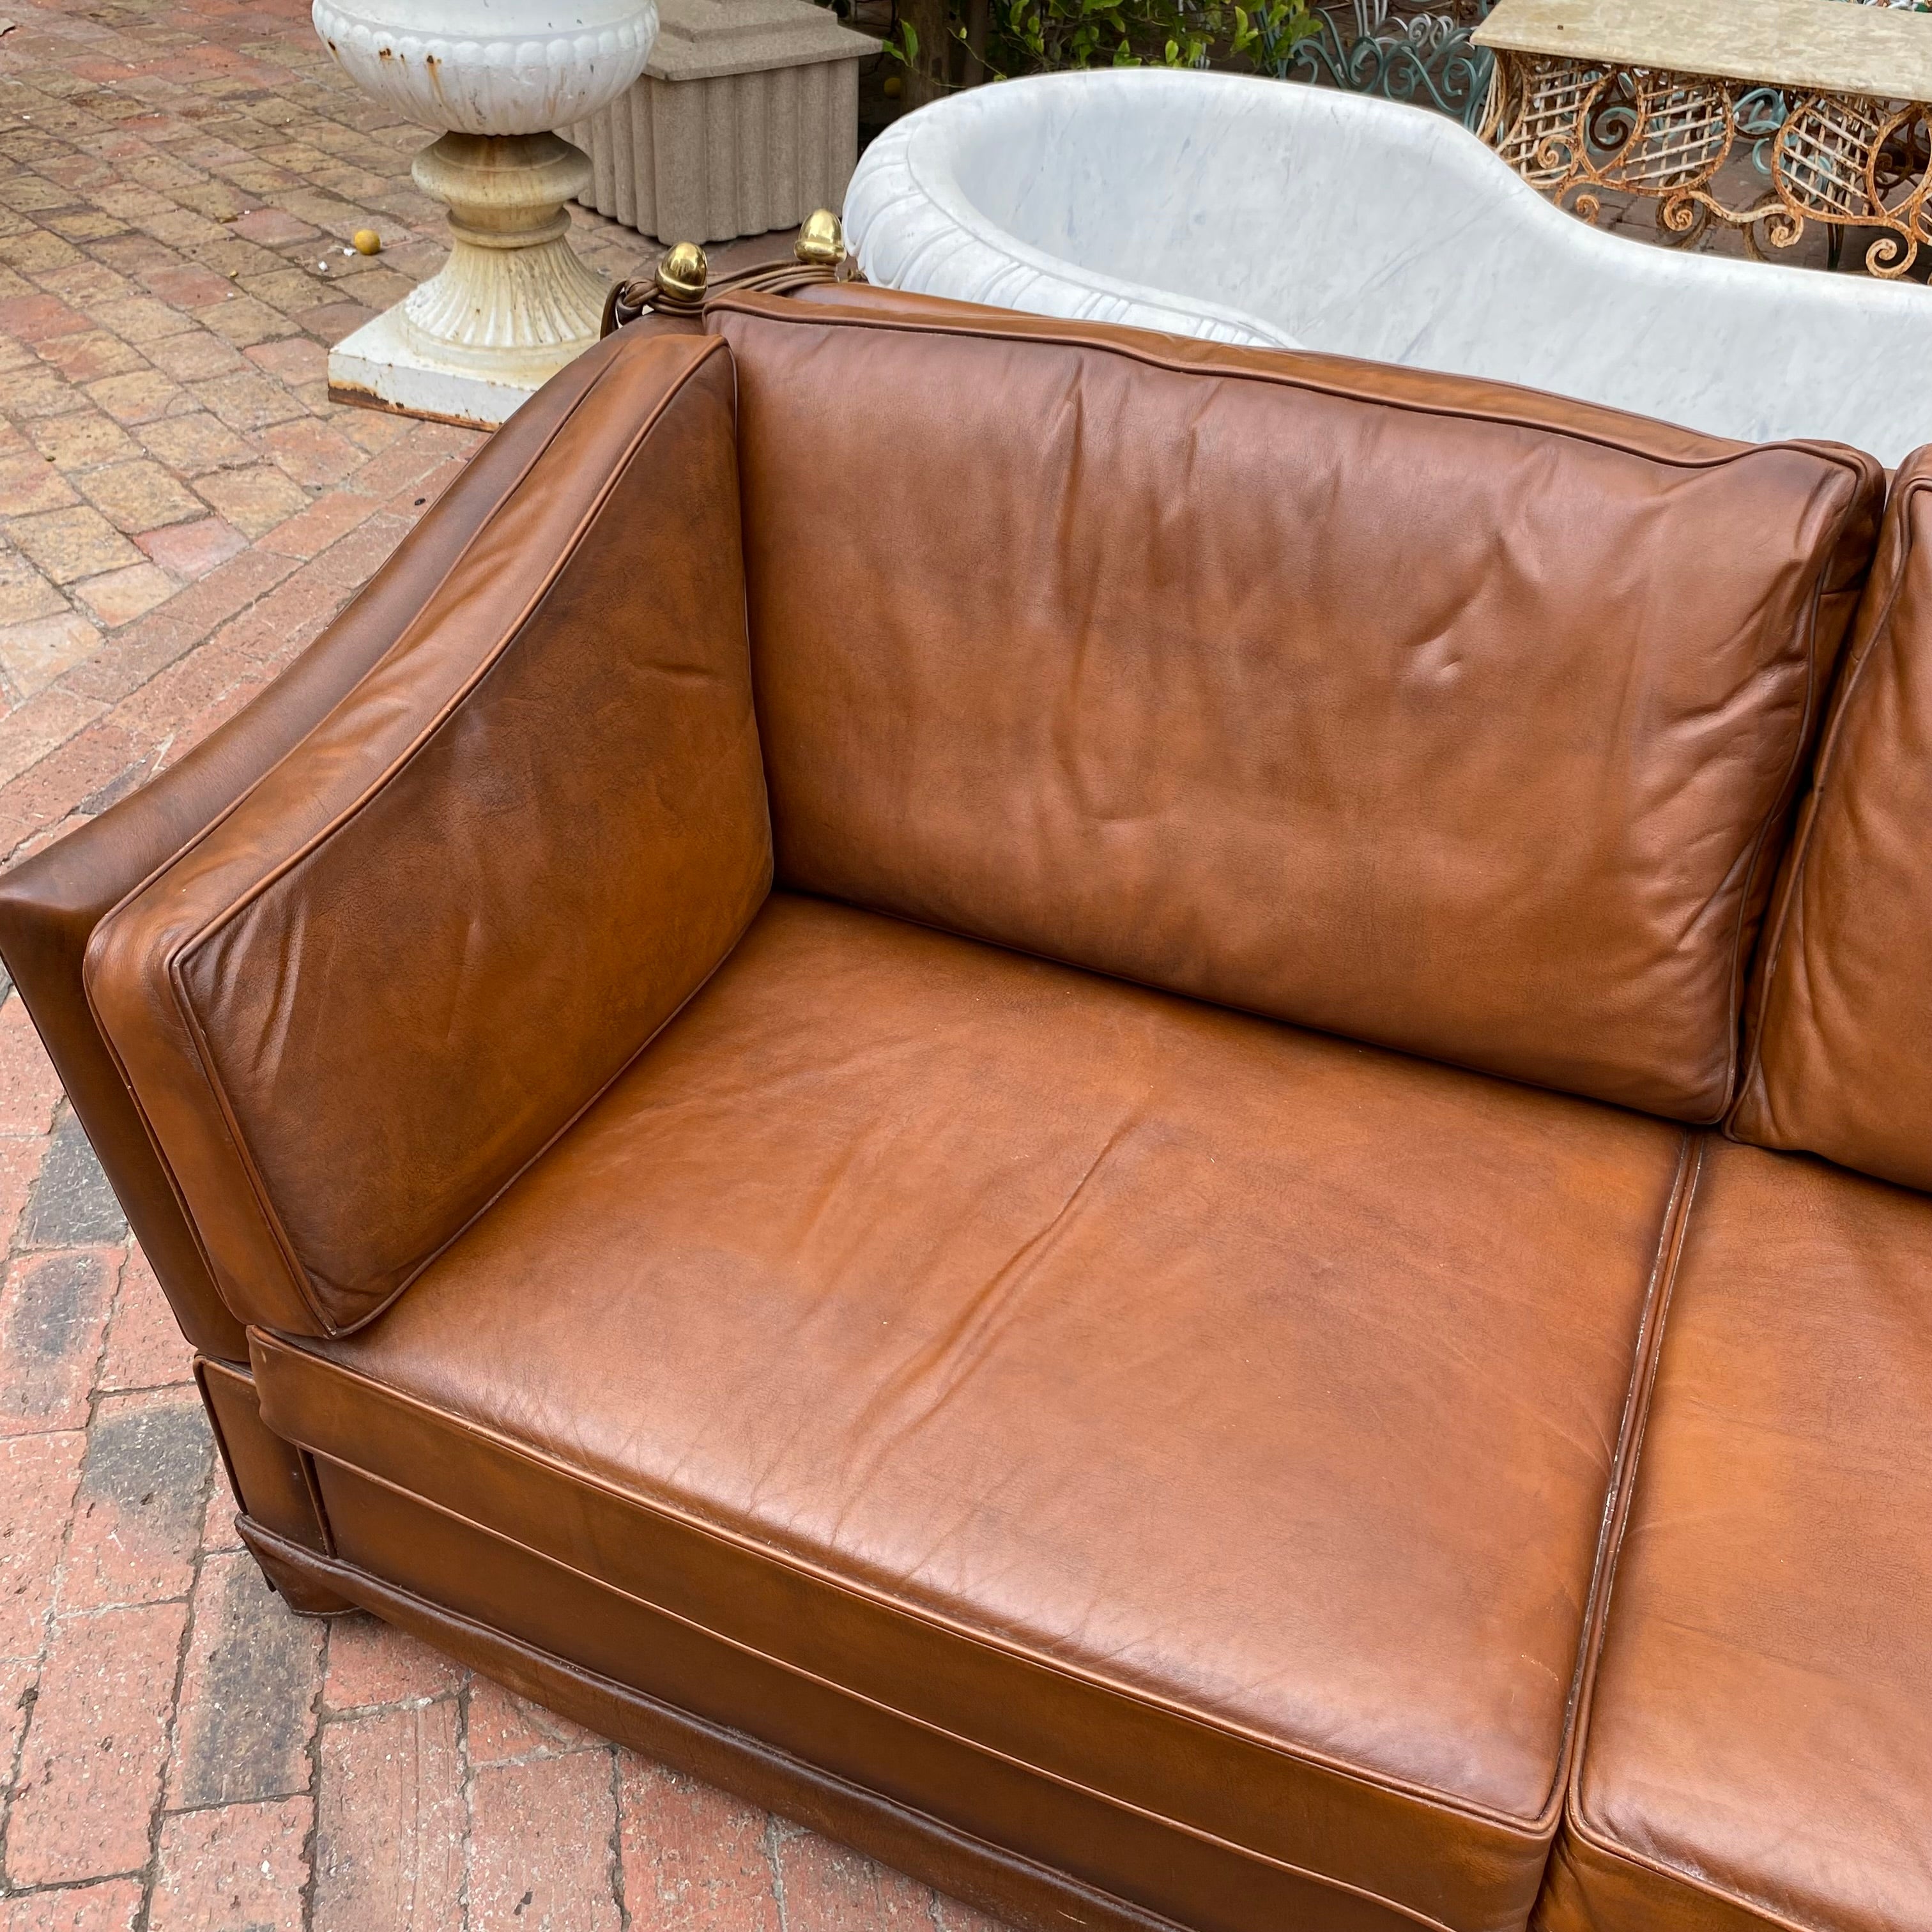 Tan Knoll Leather Sofa